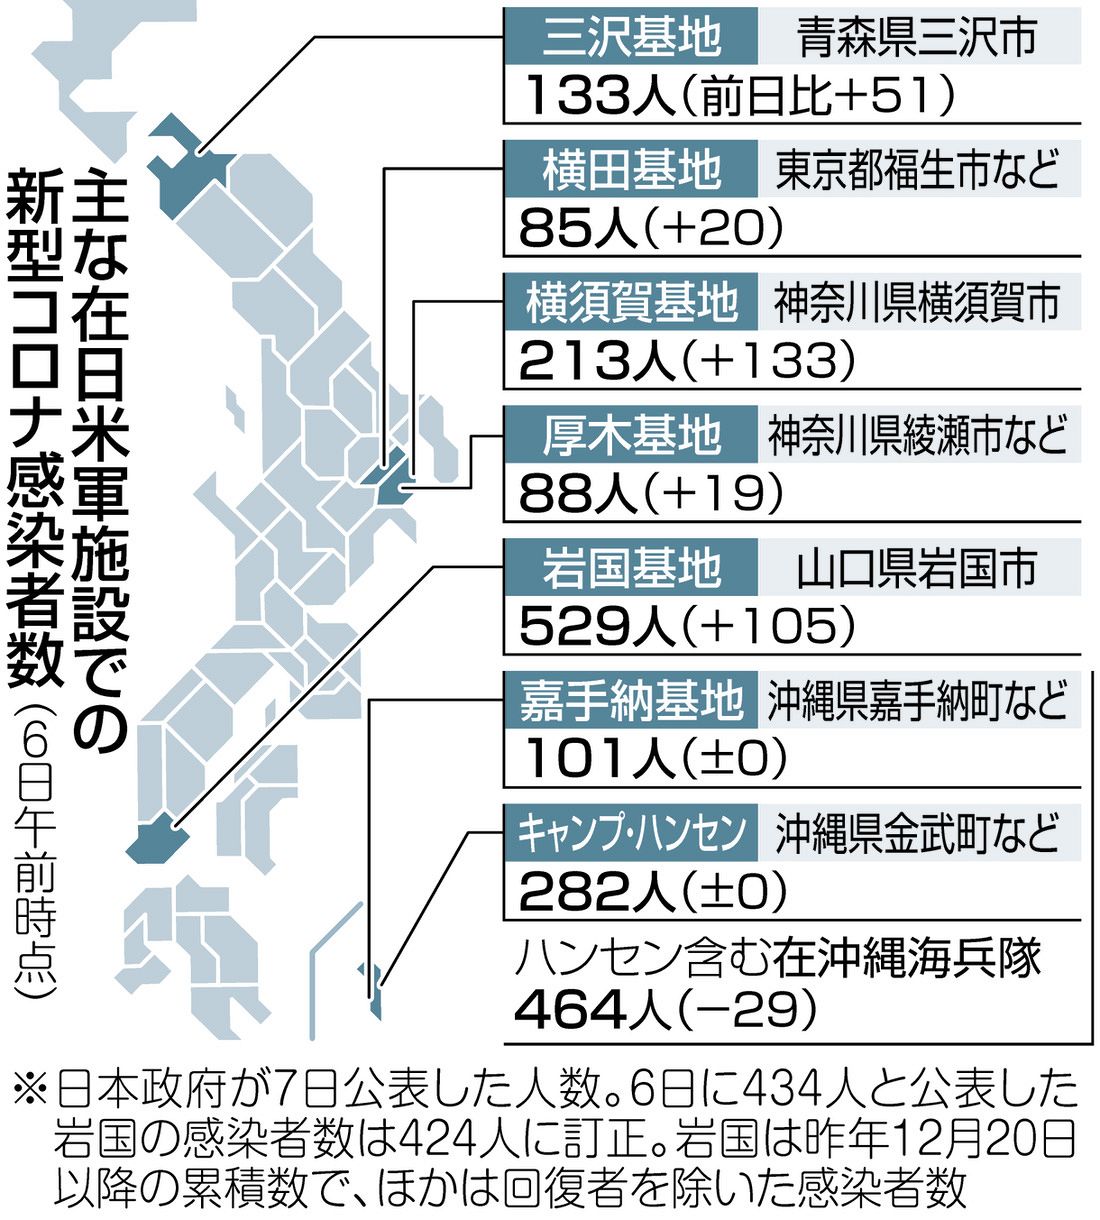 者 コロナ 感染 数 の 日本 日本で新型コロナの感染者と死亡者が圧倒的に少ない理由は・・ファクターX!